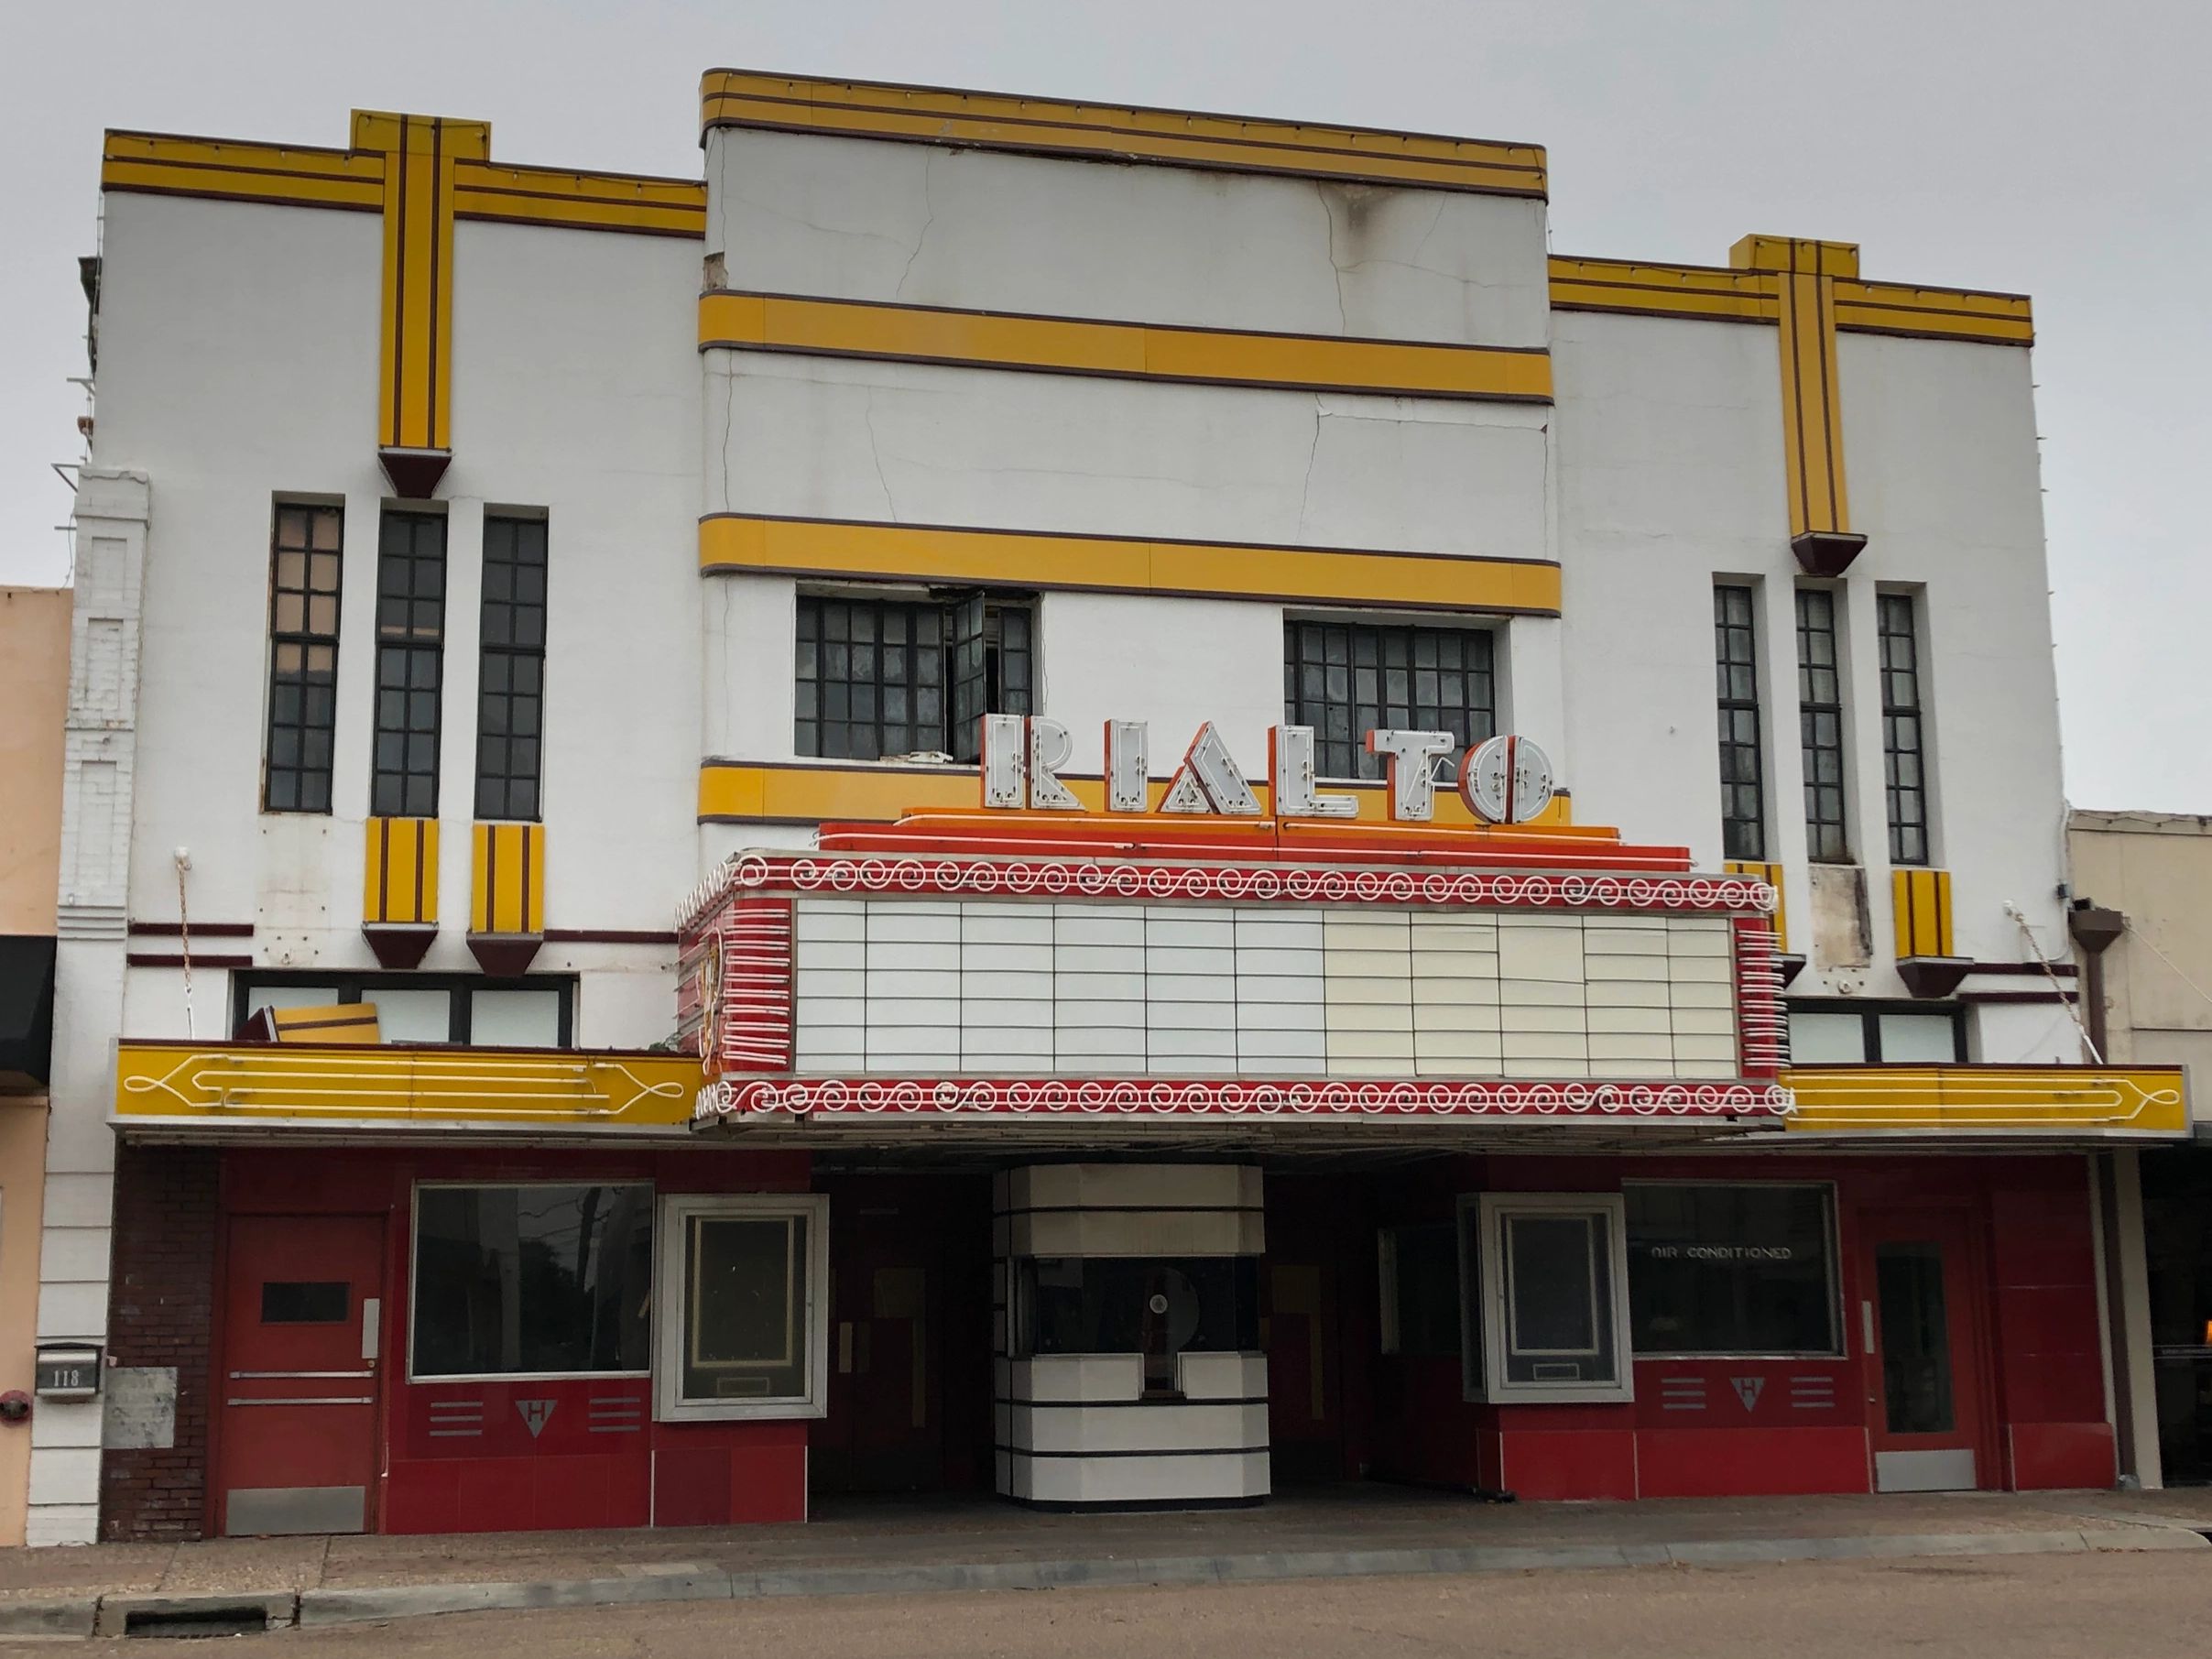 Art Deco Rialto Theatre in Beeville, Texas